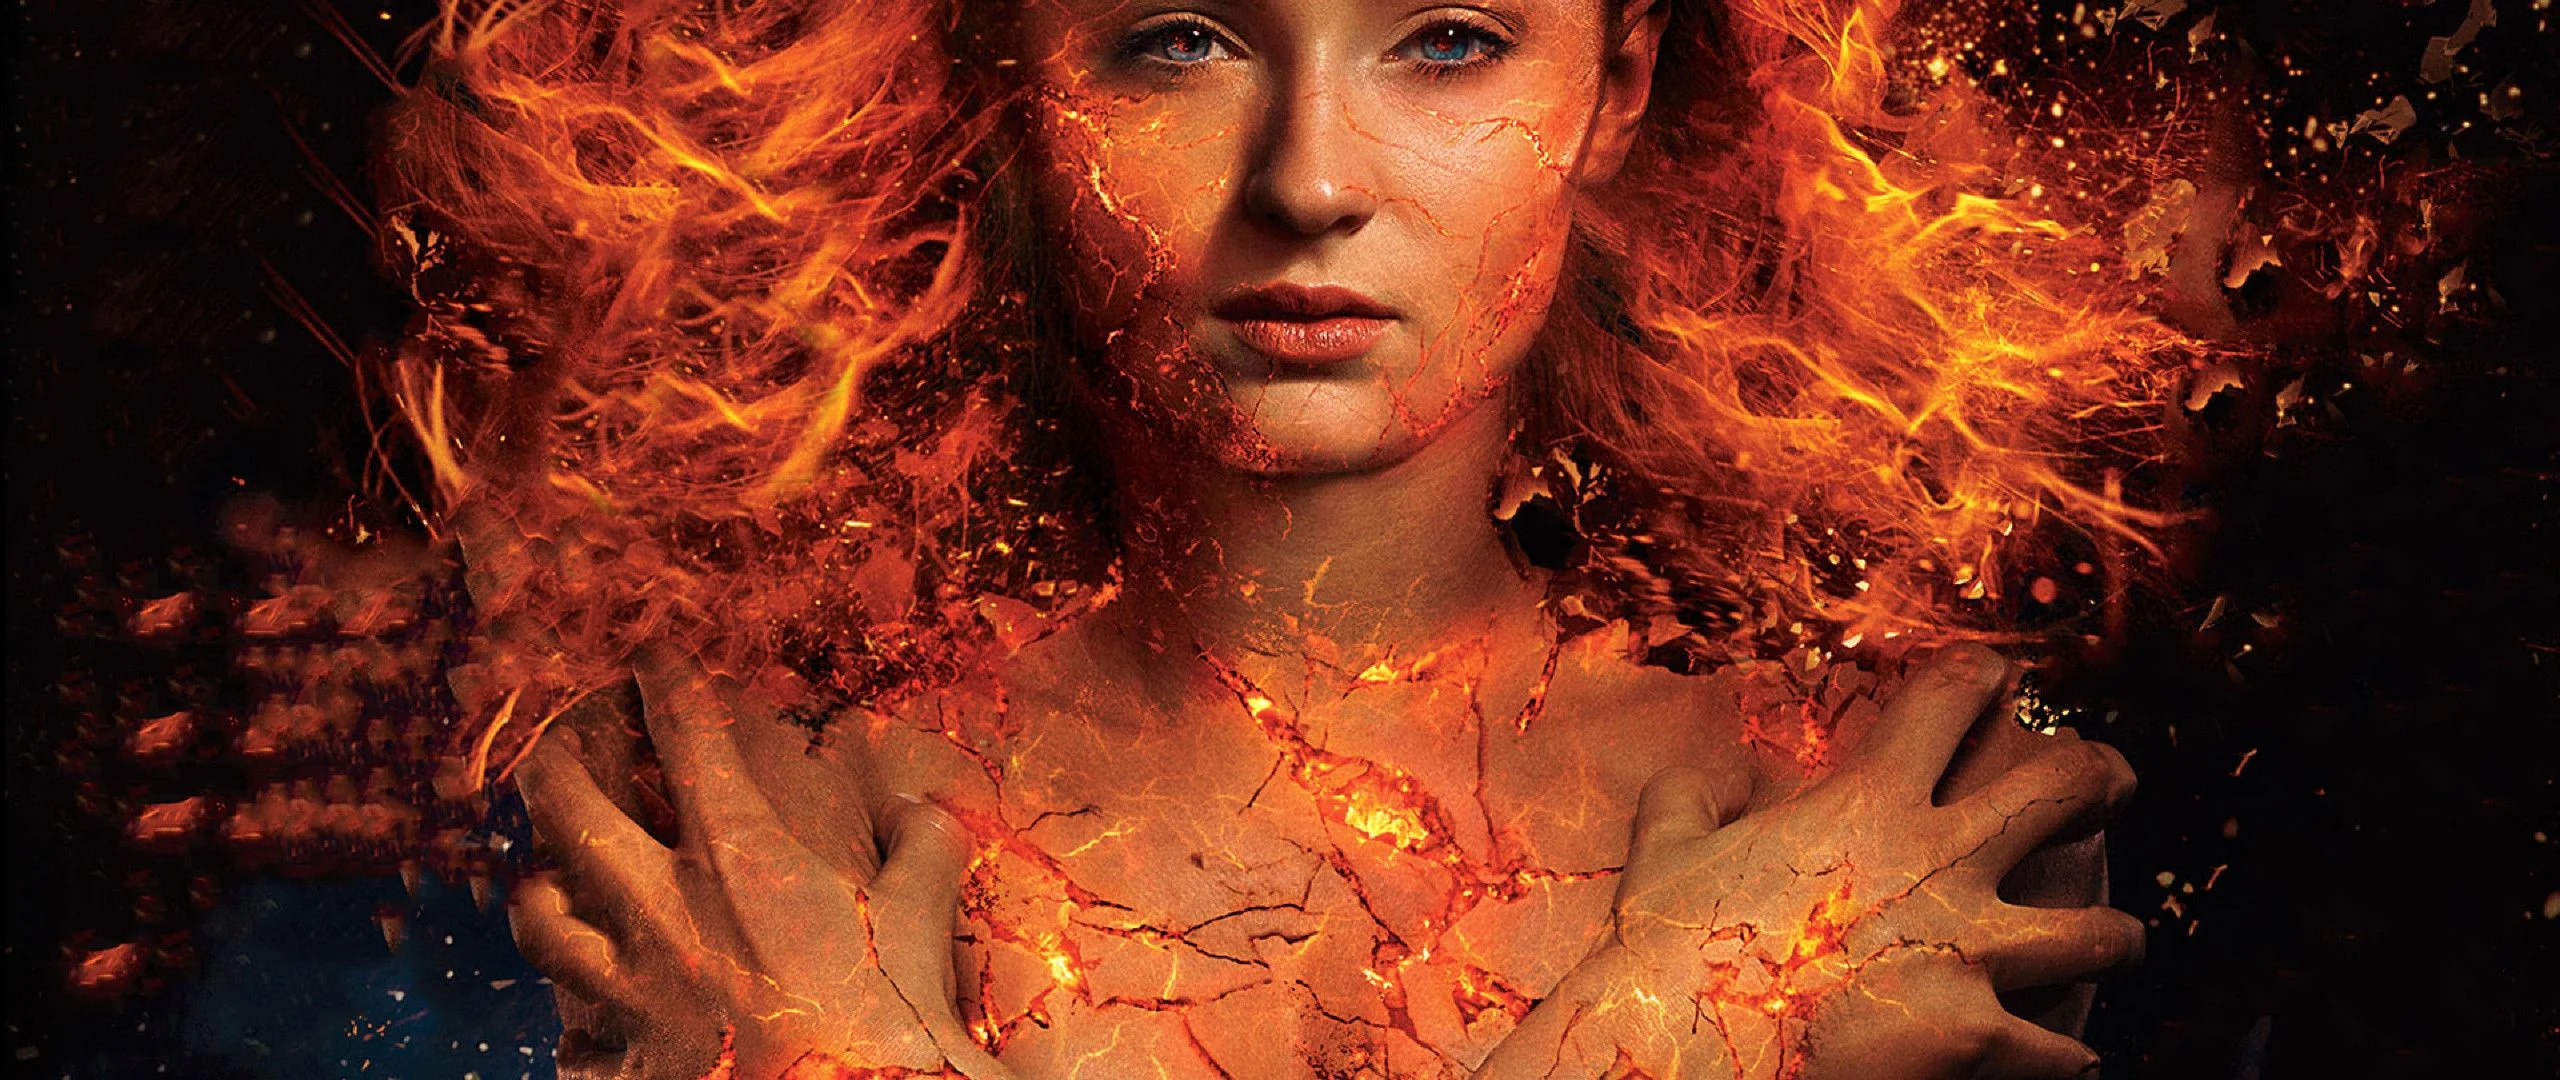 Sophie Turner, Phoenix, Dark Phoenix wallpapers, Backgrounds, 2560x1080 Dual Screen Desktop